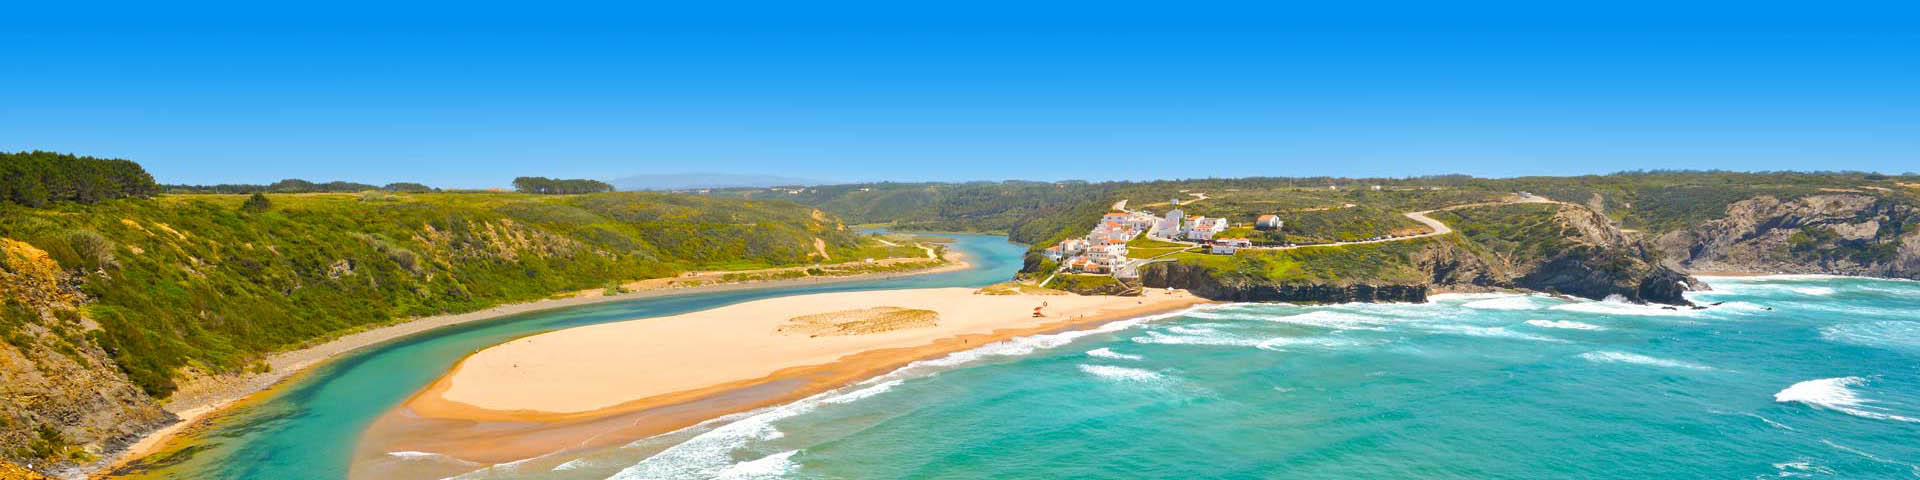 Strand met zee en rotsen met witte huisjes aan de kust van Portugal